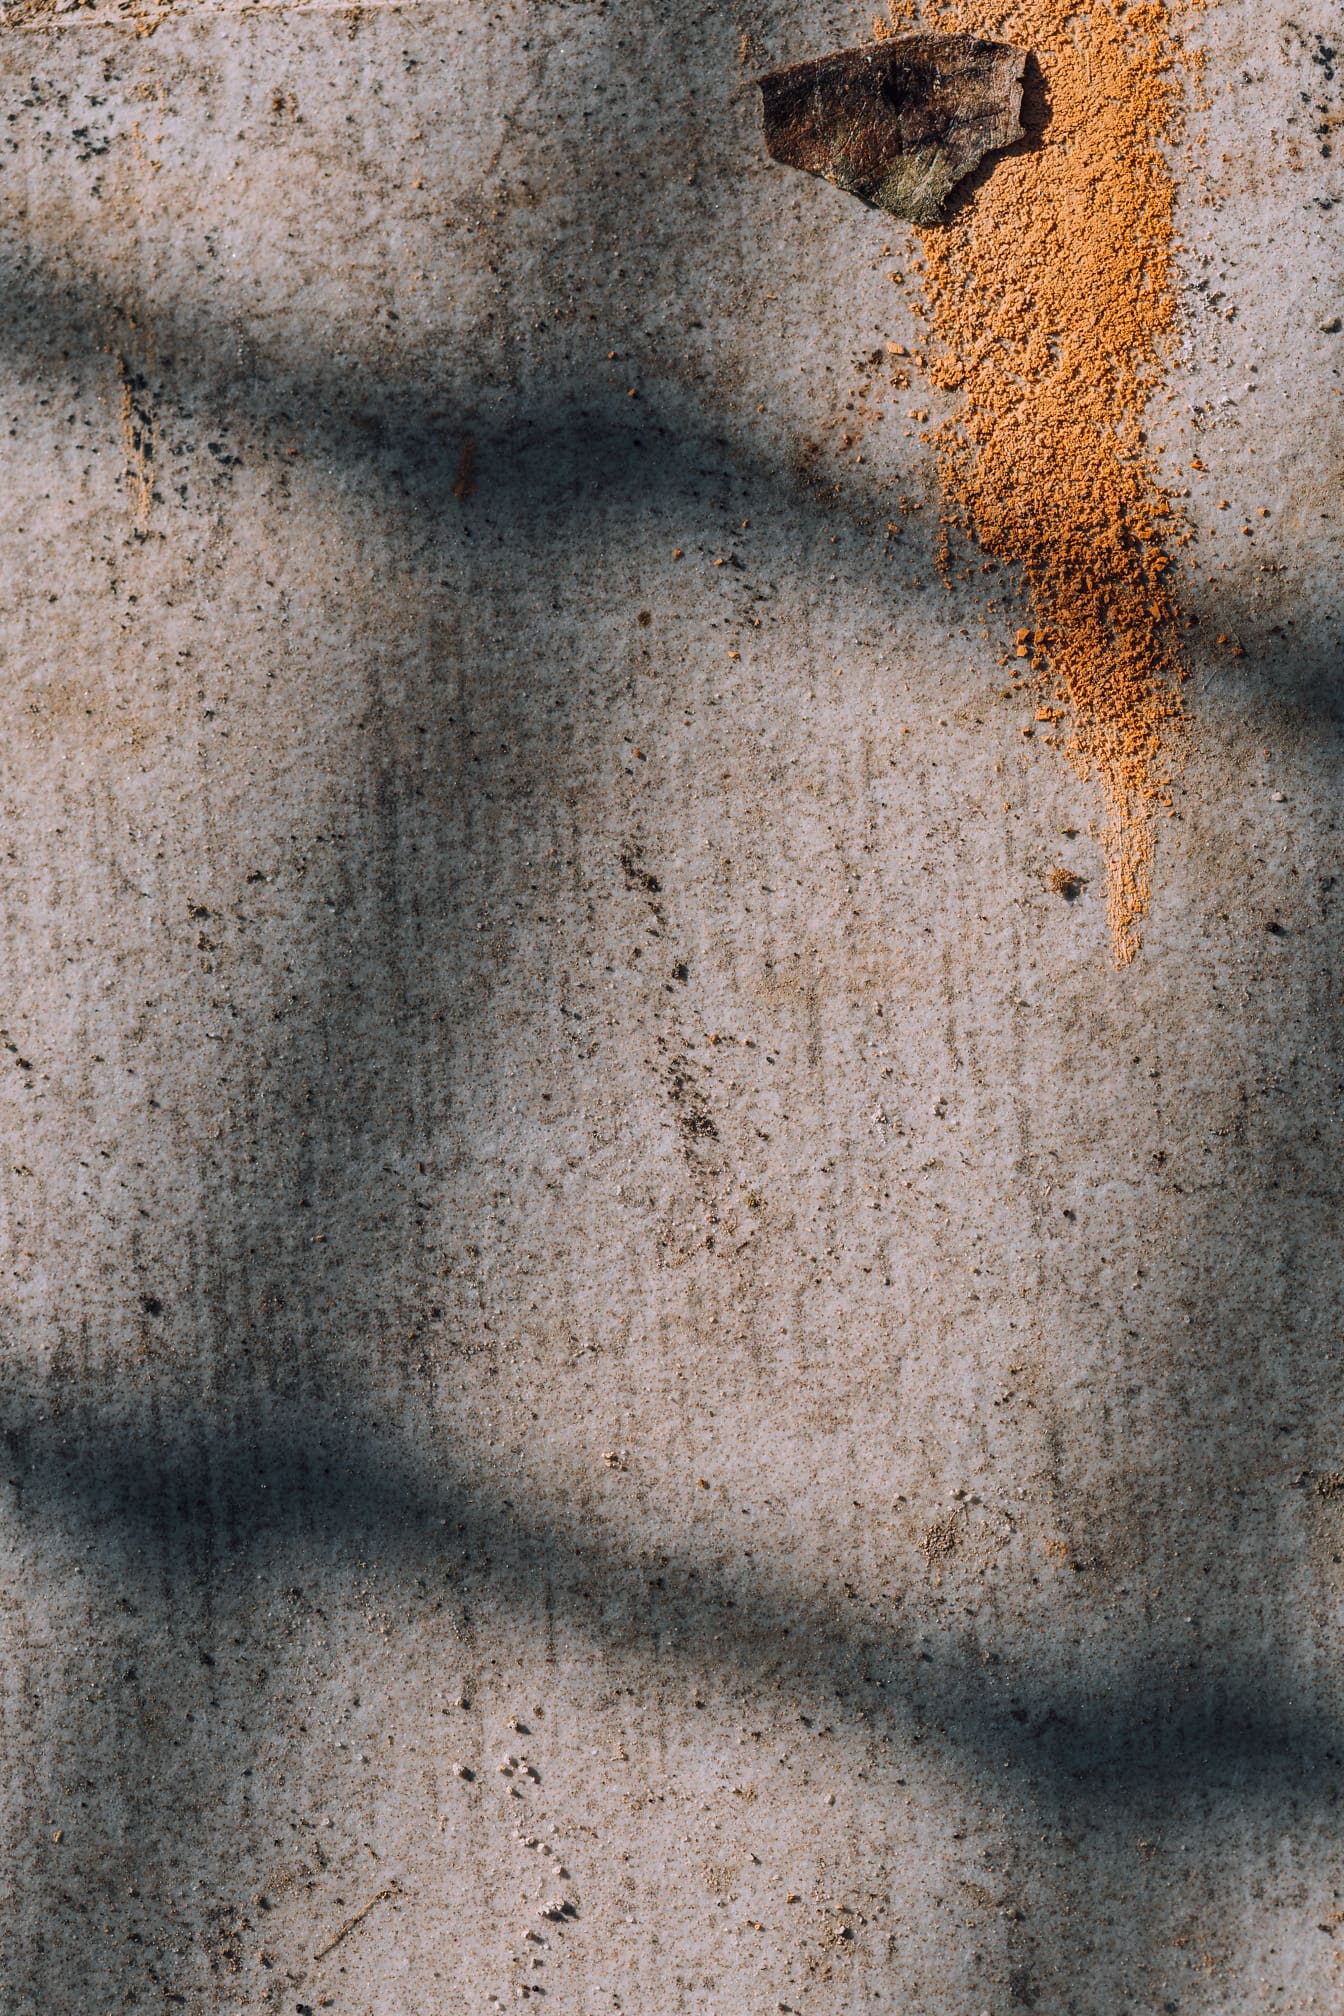 Kirli çimento duvar yakın çekim dokusu üzerine turuncu sarı boya